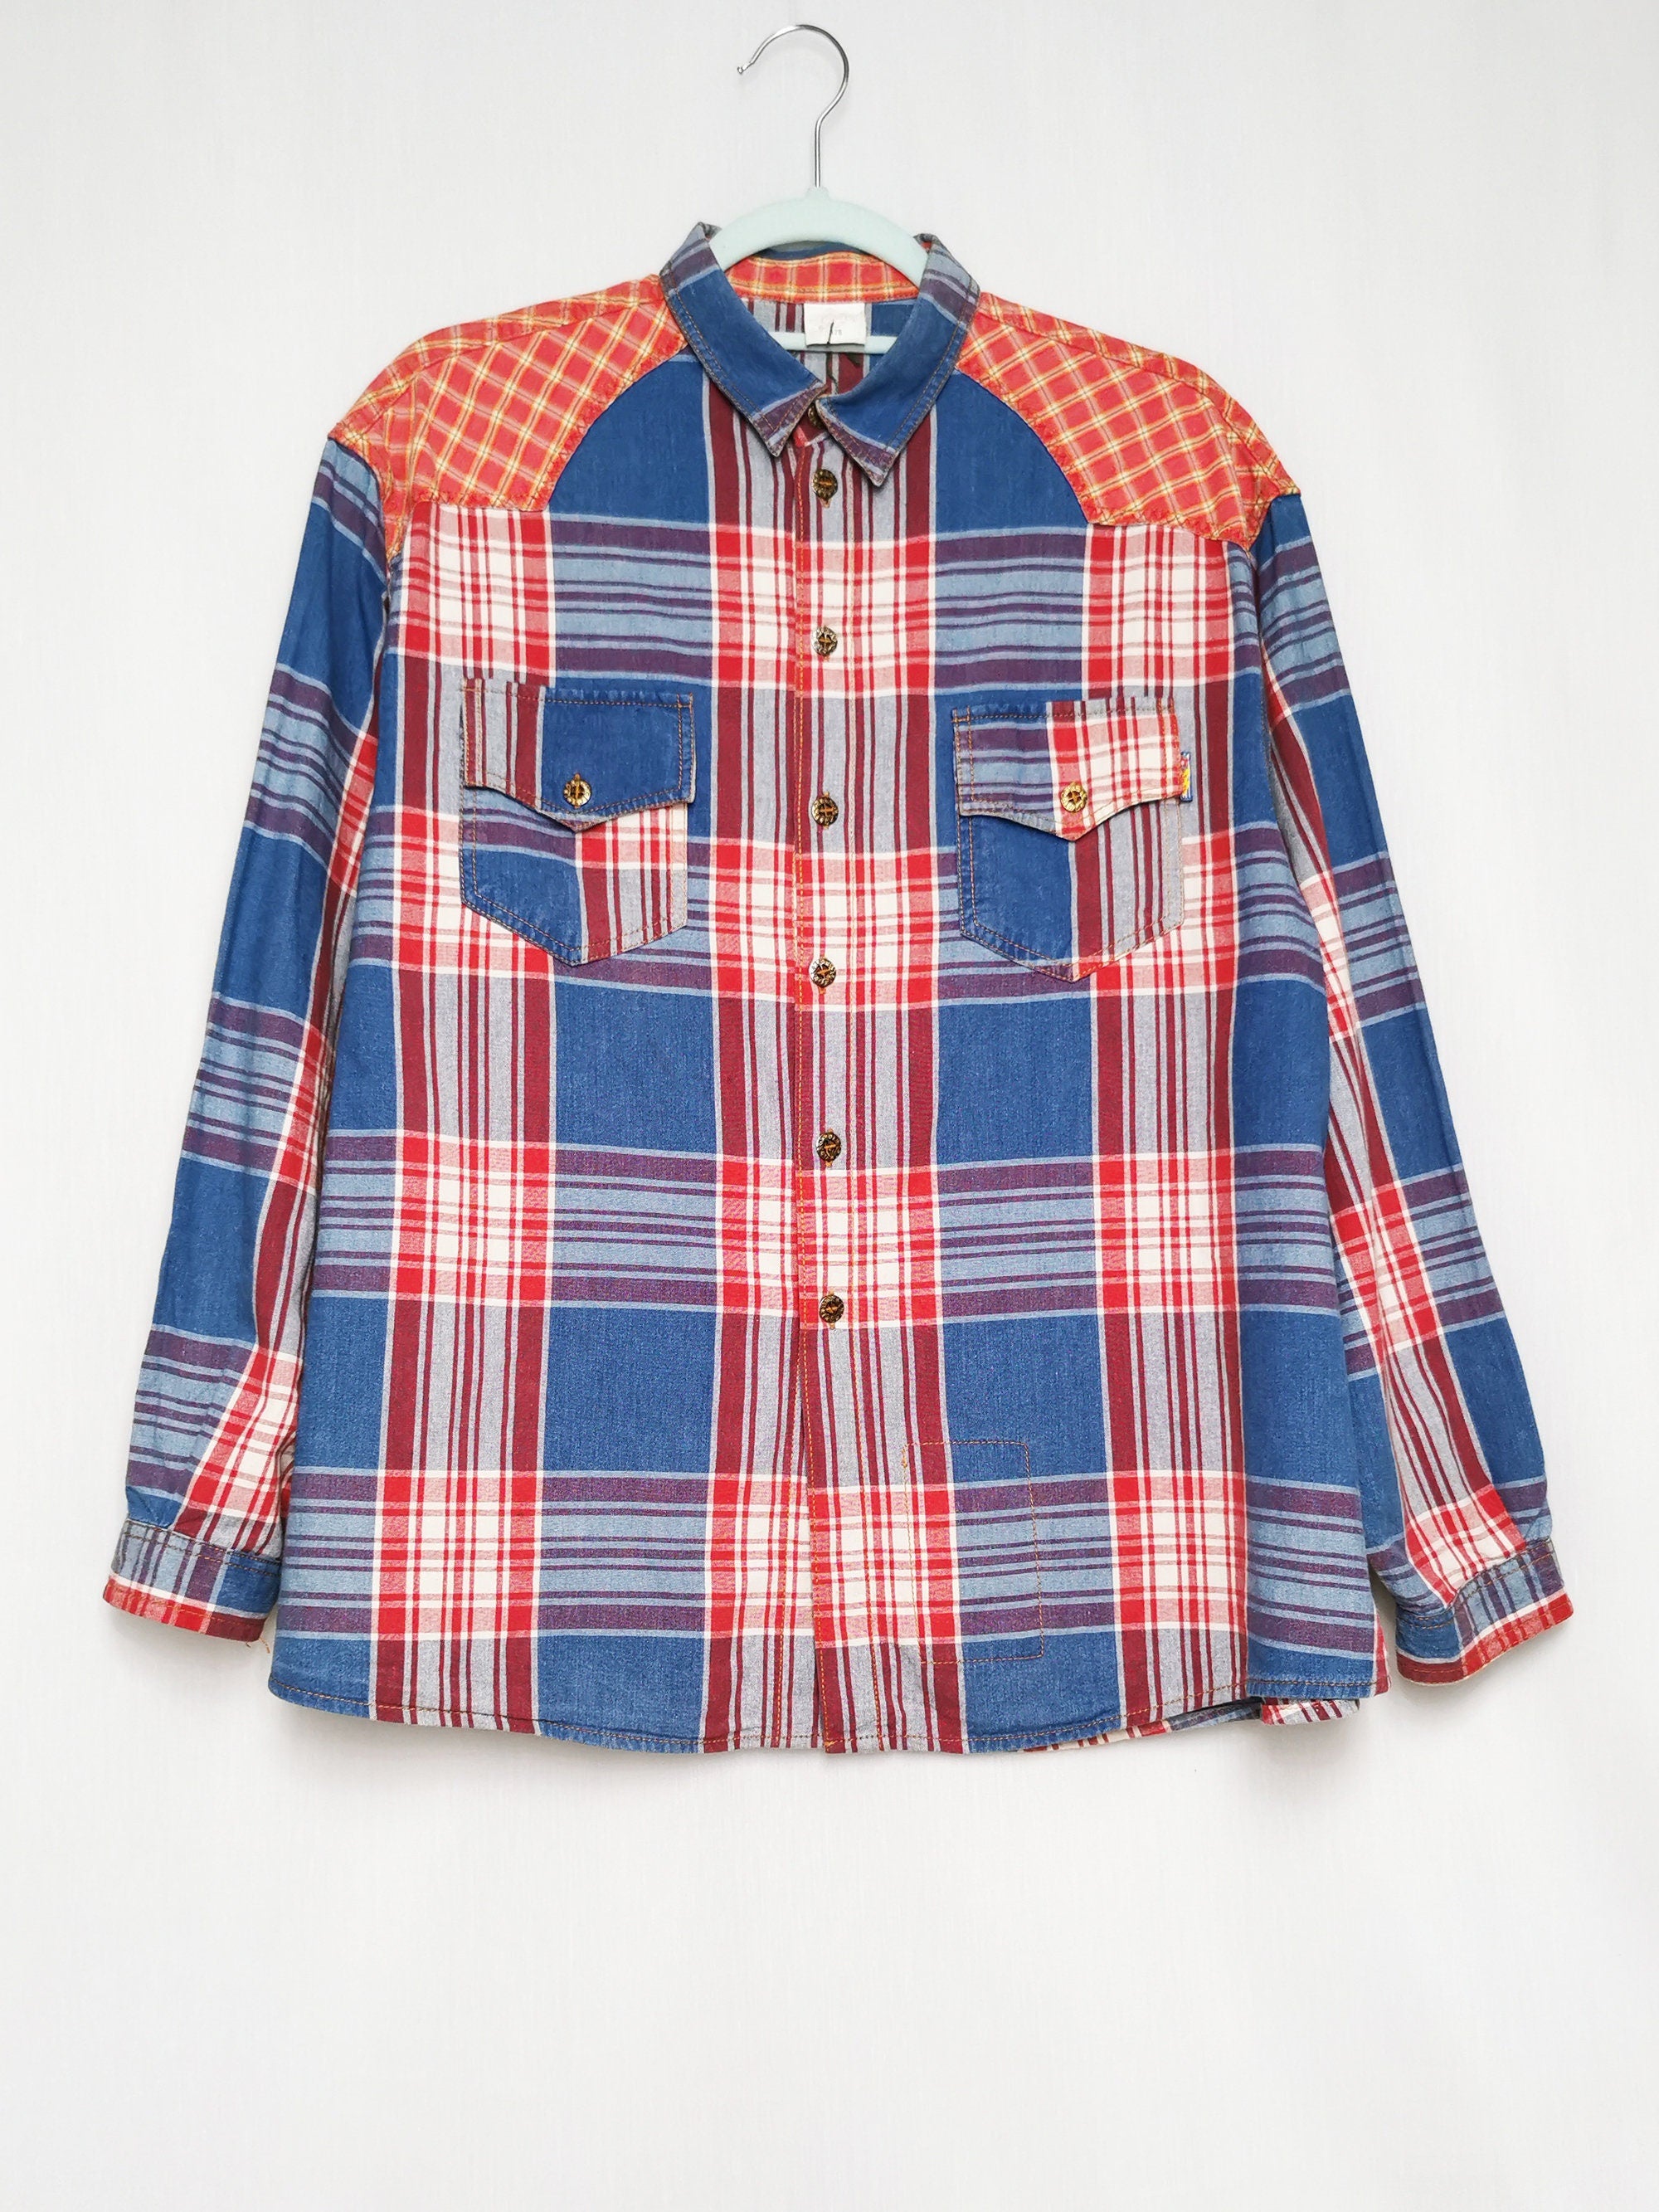 Vintage 90s menswear plaid unisex oversize shirt top